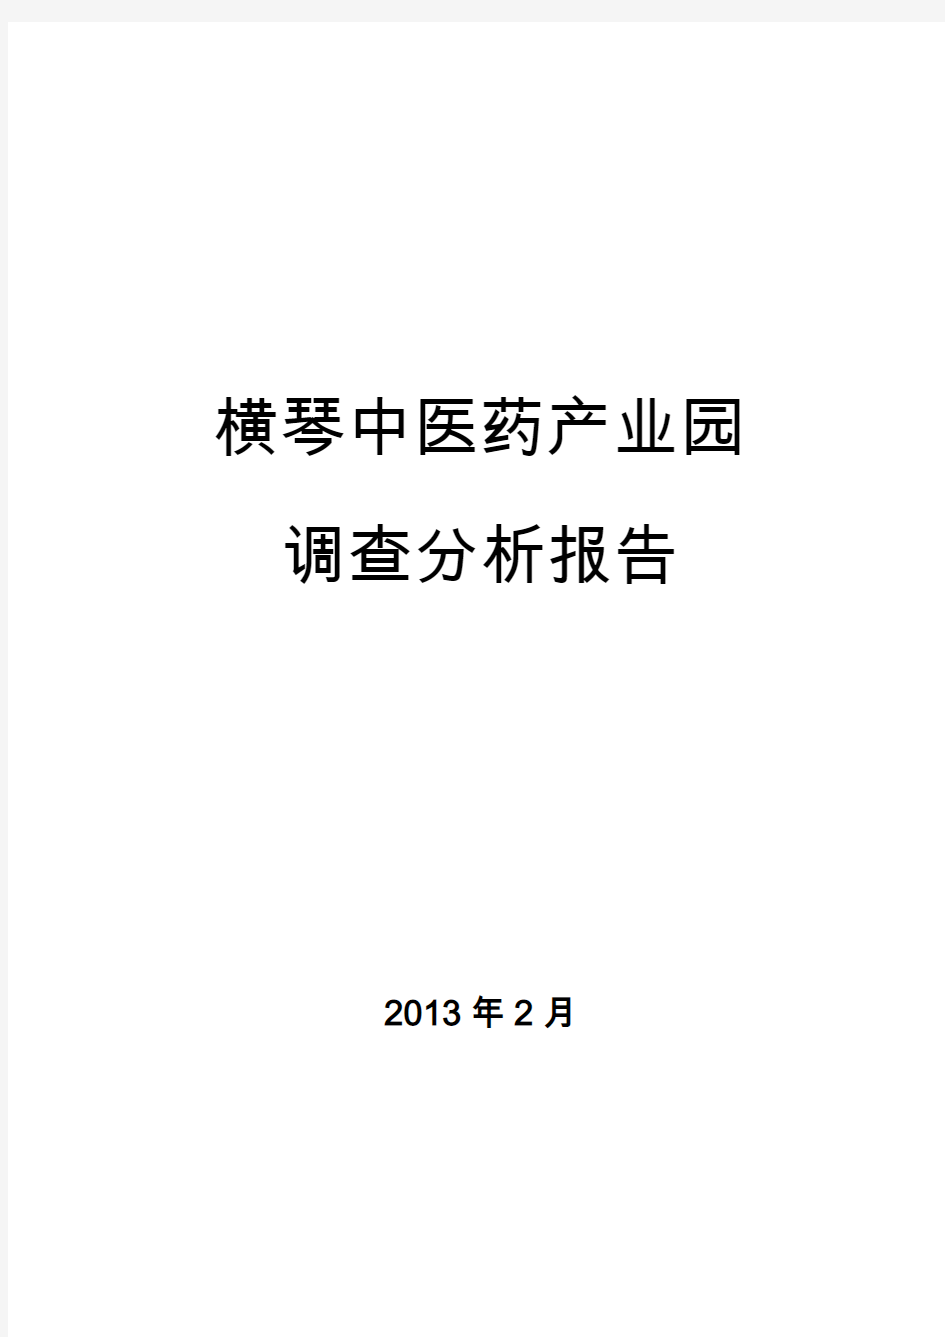 横琴中医药产业园分析报告201302